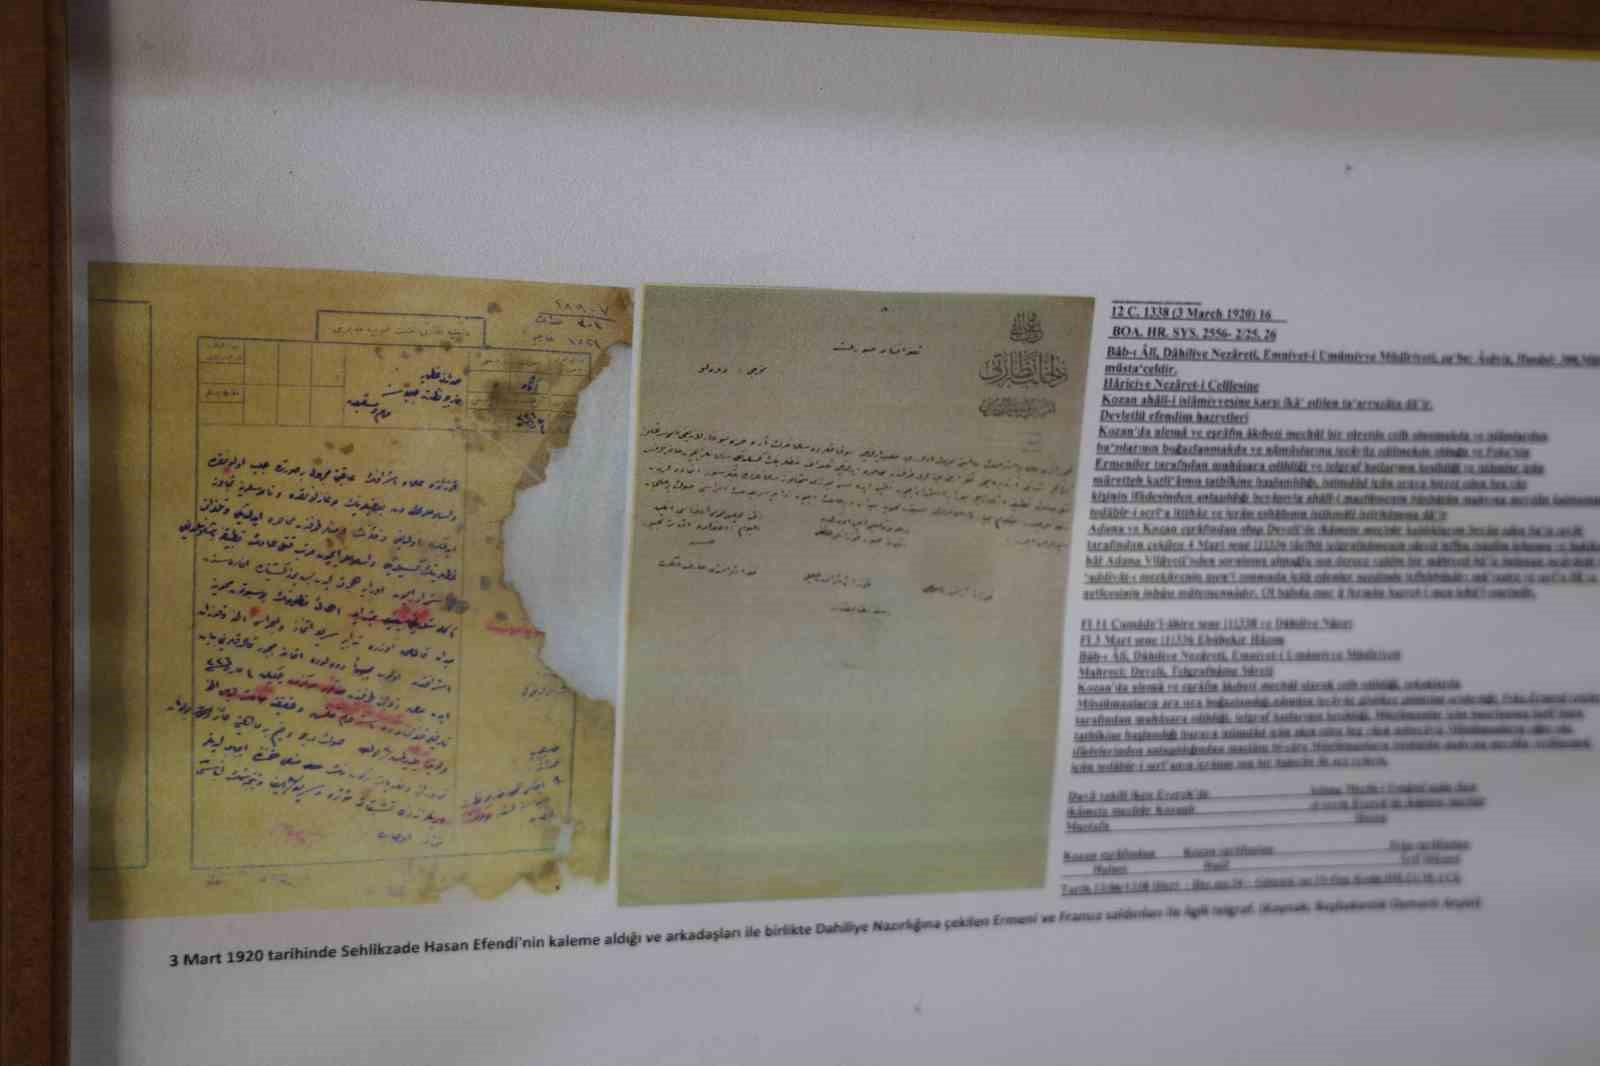 çukurova’da ermeni ve fransızların yaptığı katliamlar belgeleri ile sergileniyor